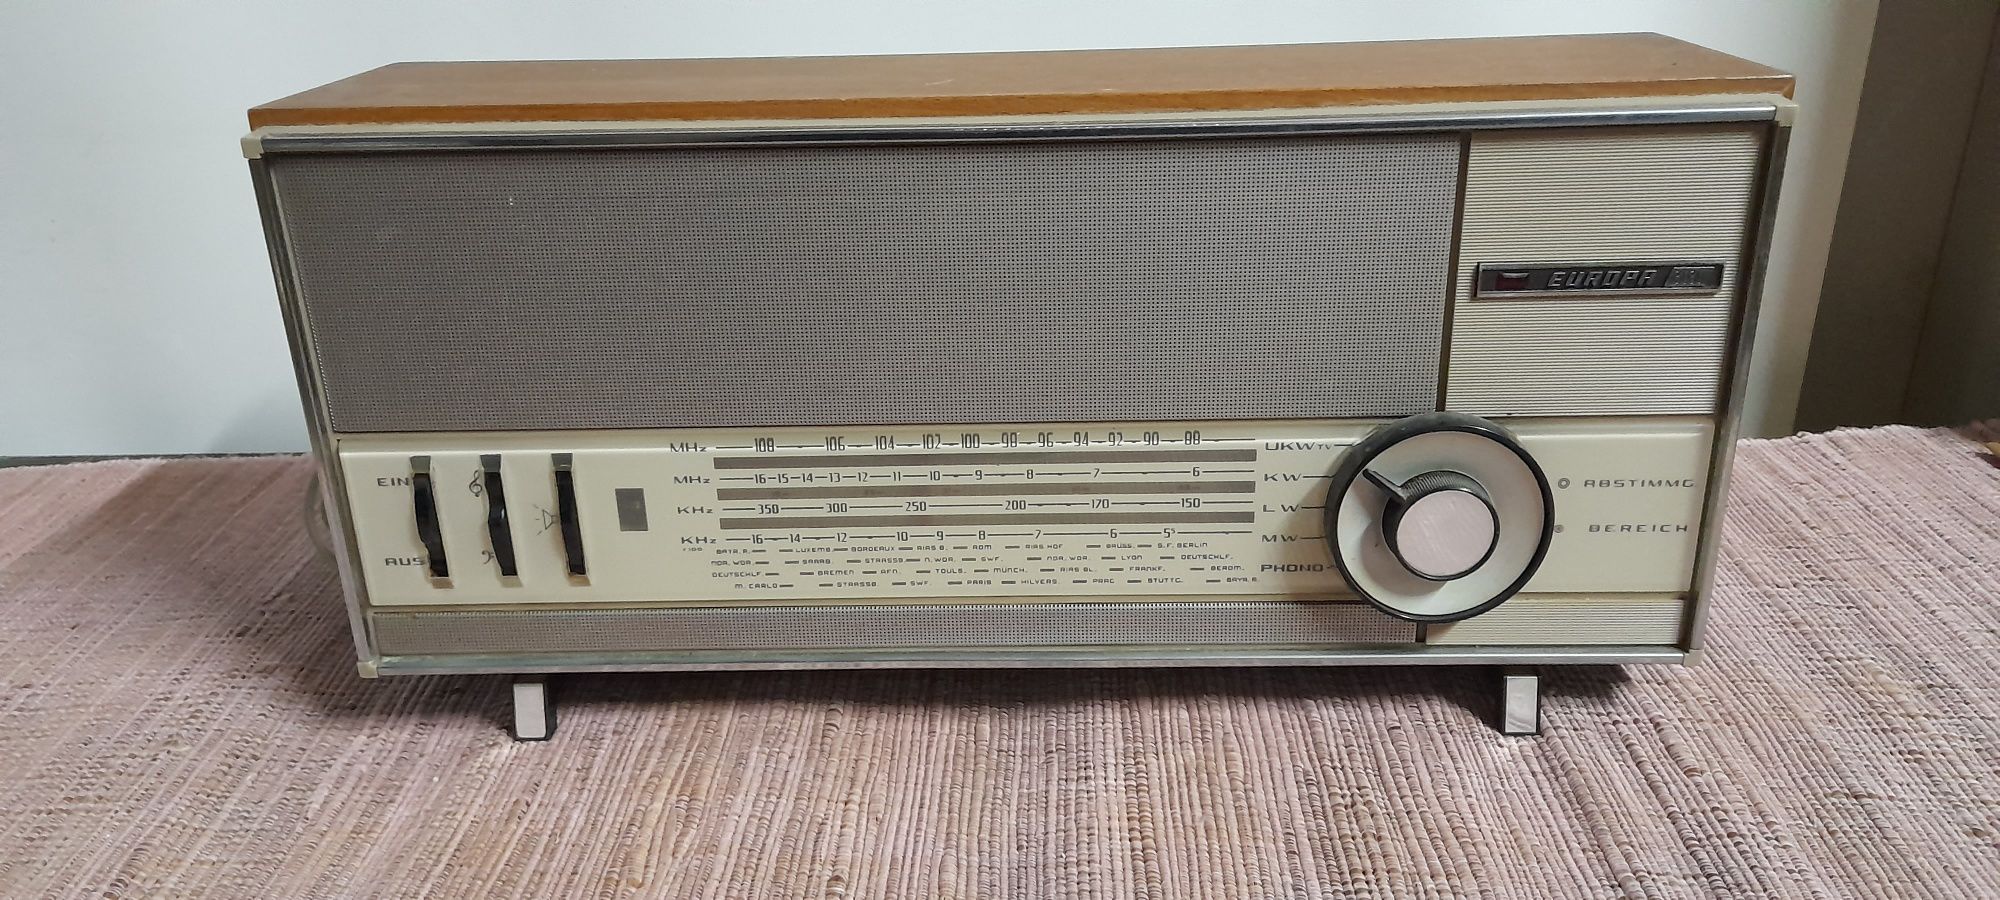 Stare Radio europa 3030